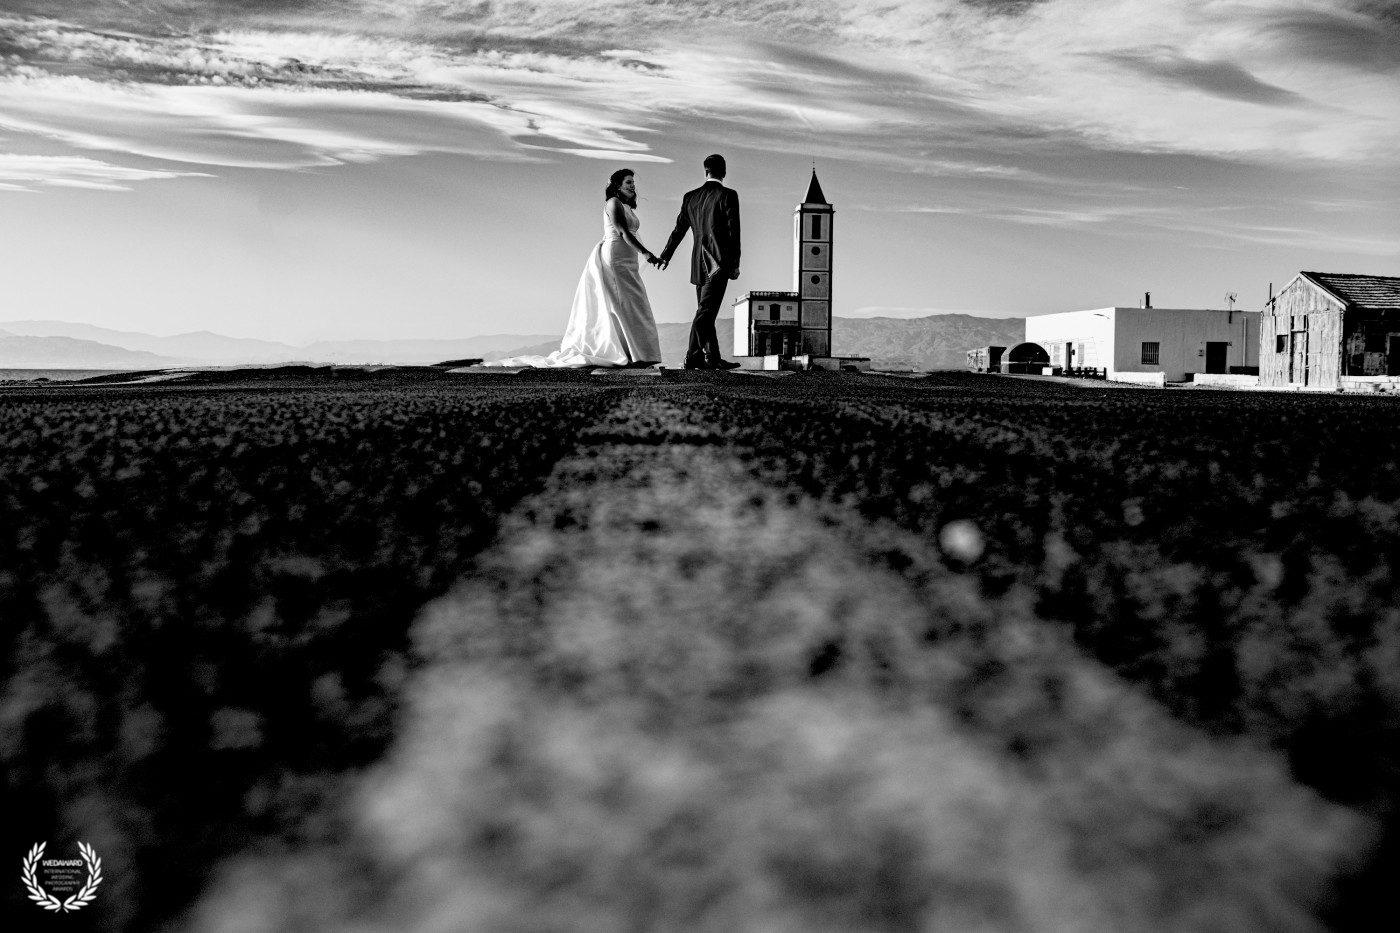 Fotografía en blanco y negro de una pareja caminando sobre la carretera